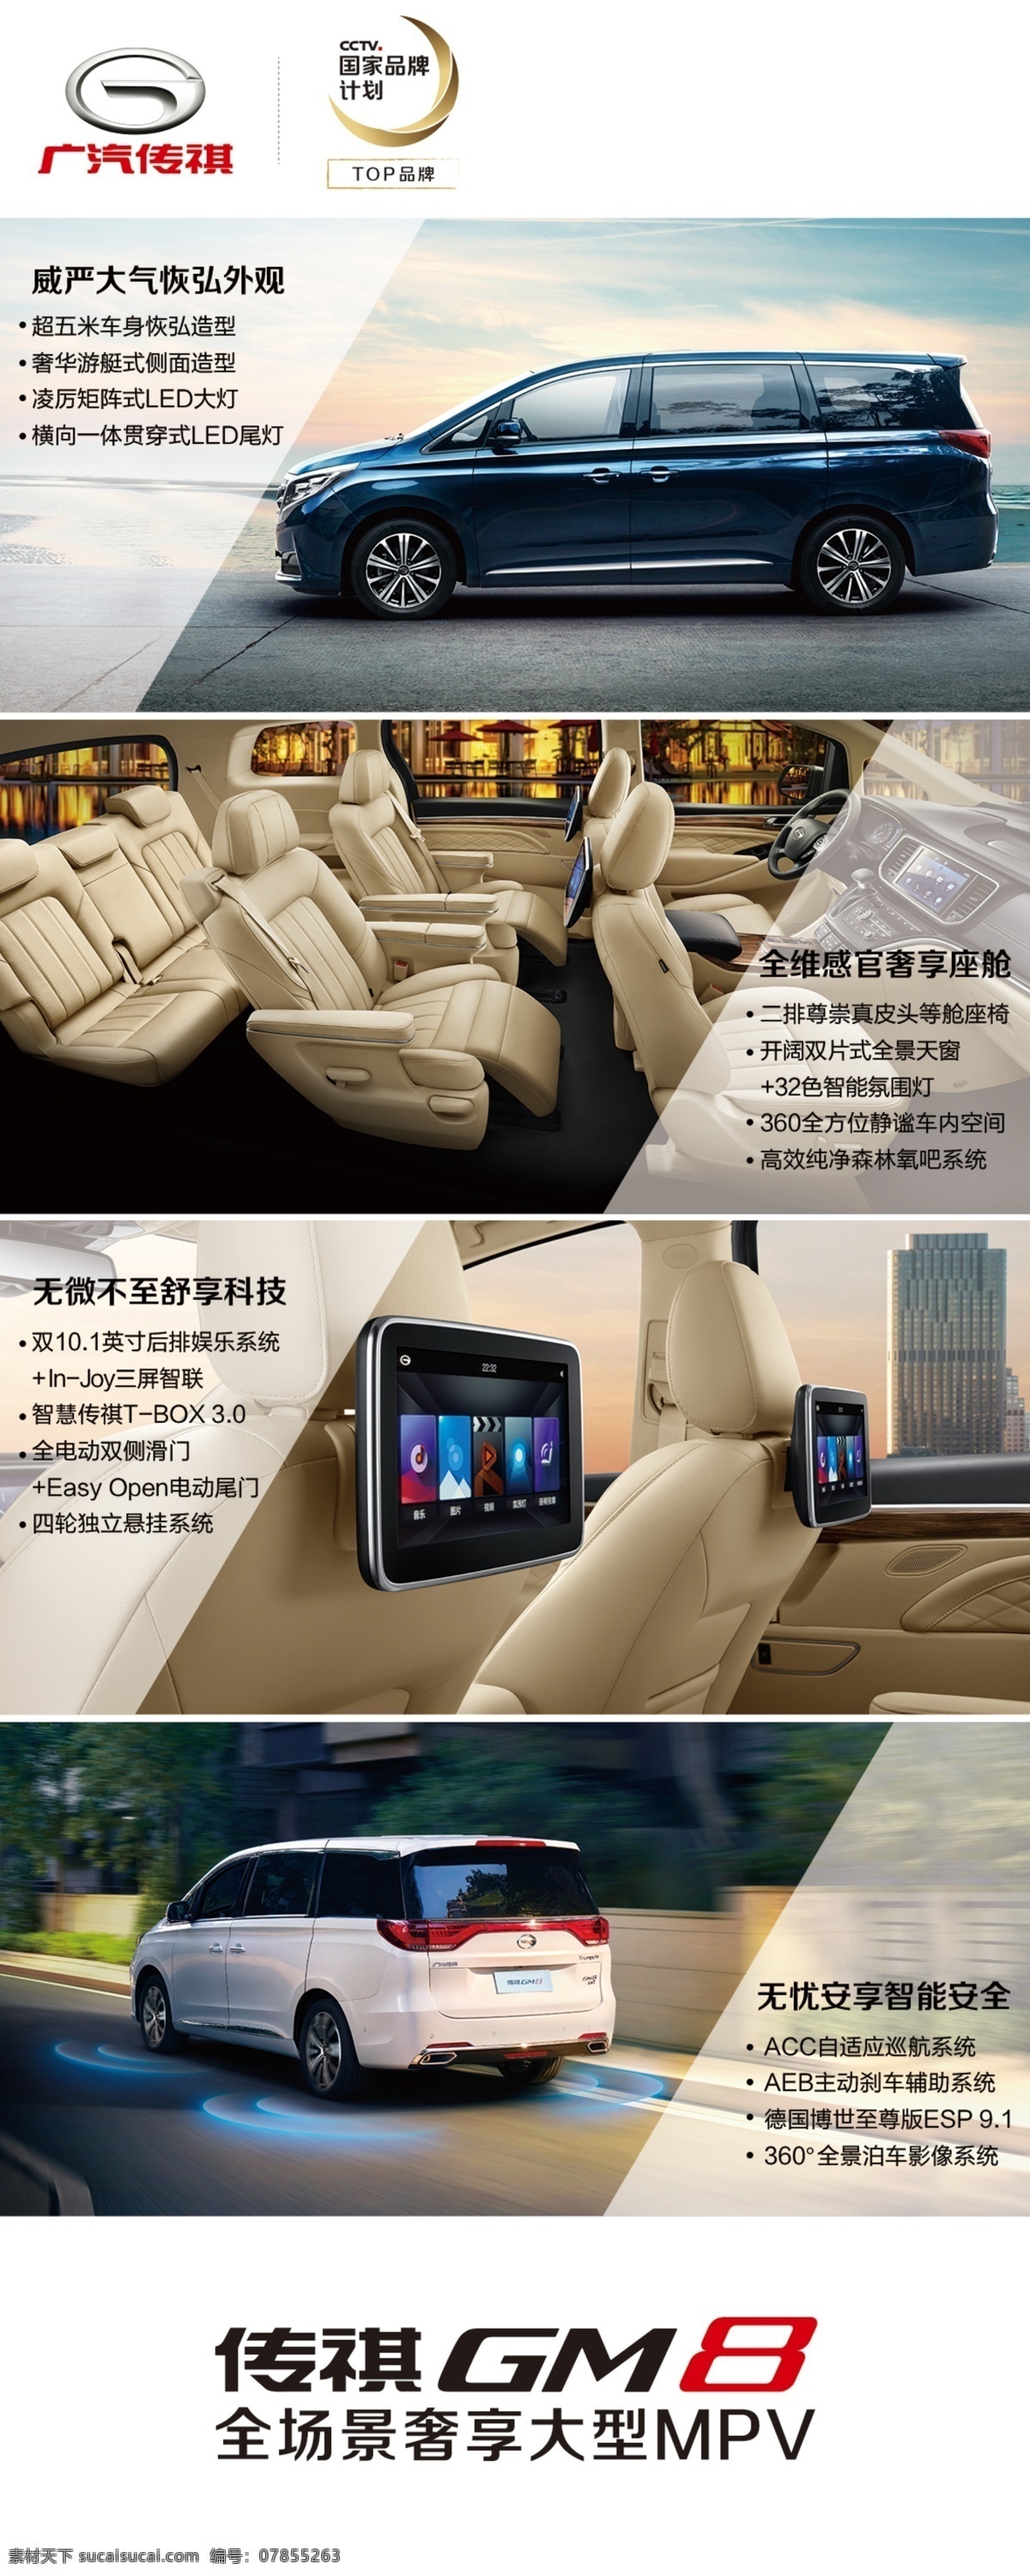 广 汽 传 祺 gm8 车型 广告牌 广汽 传祺 设计图 分层 现代科技